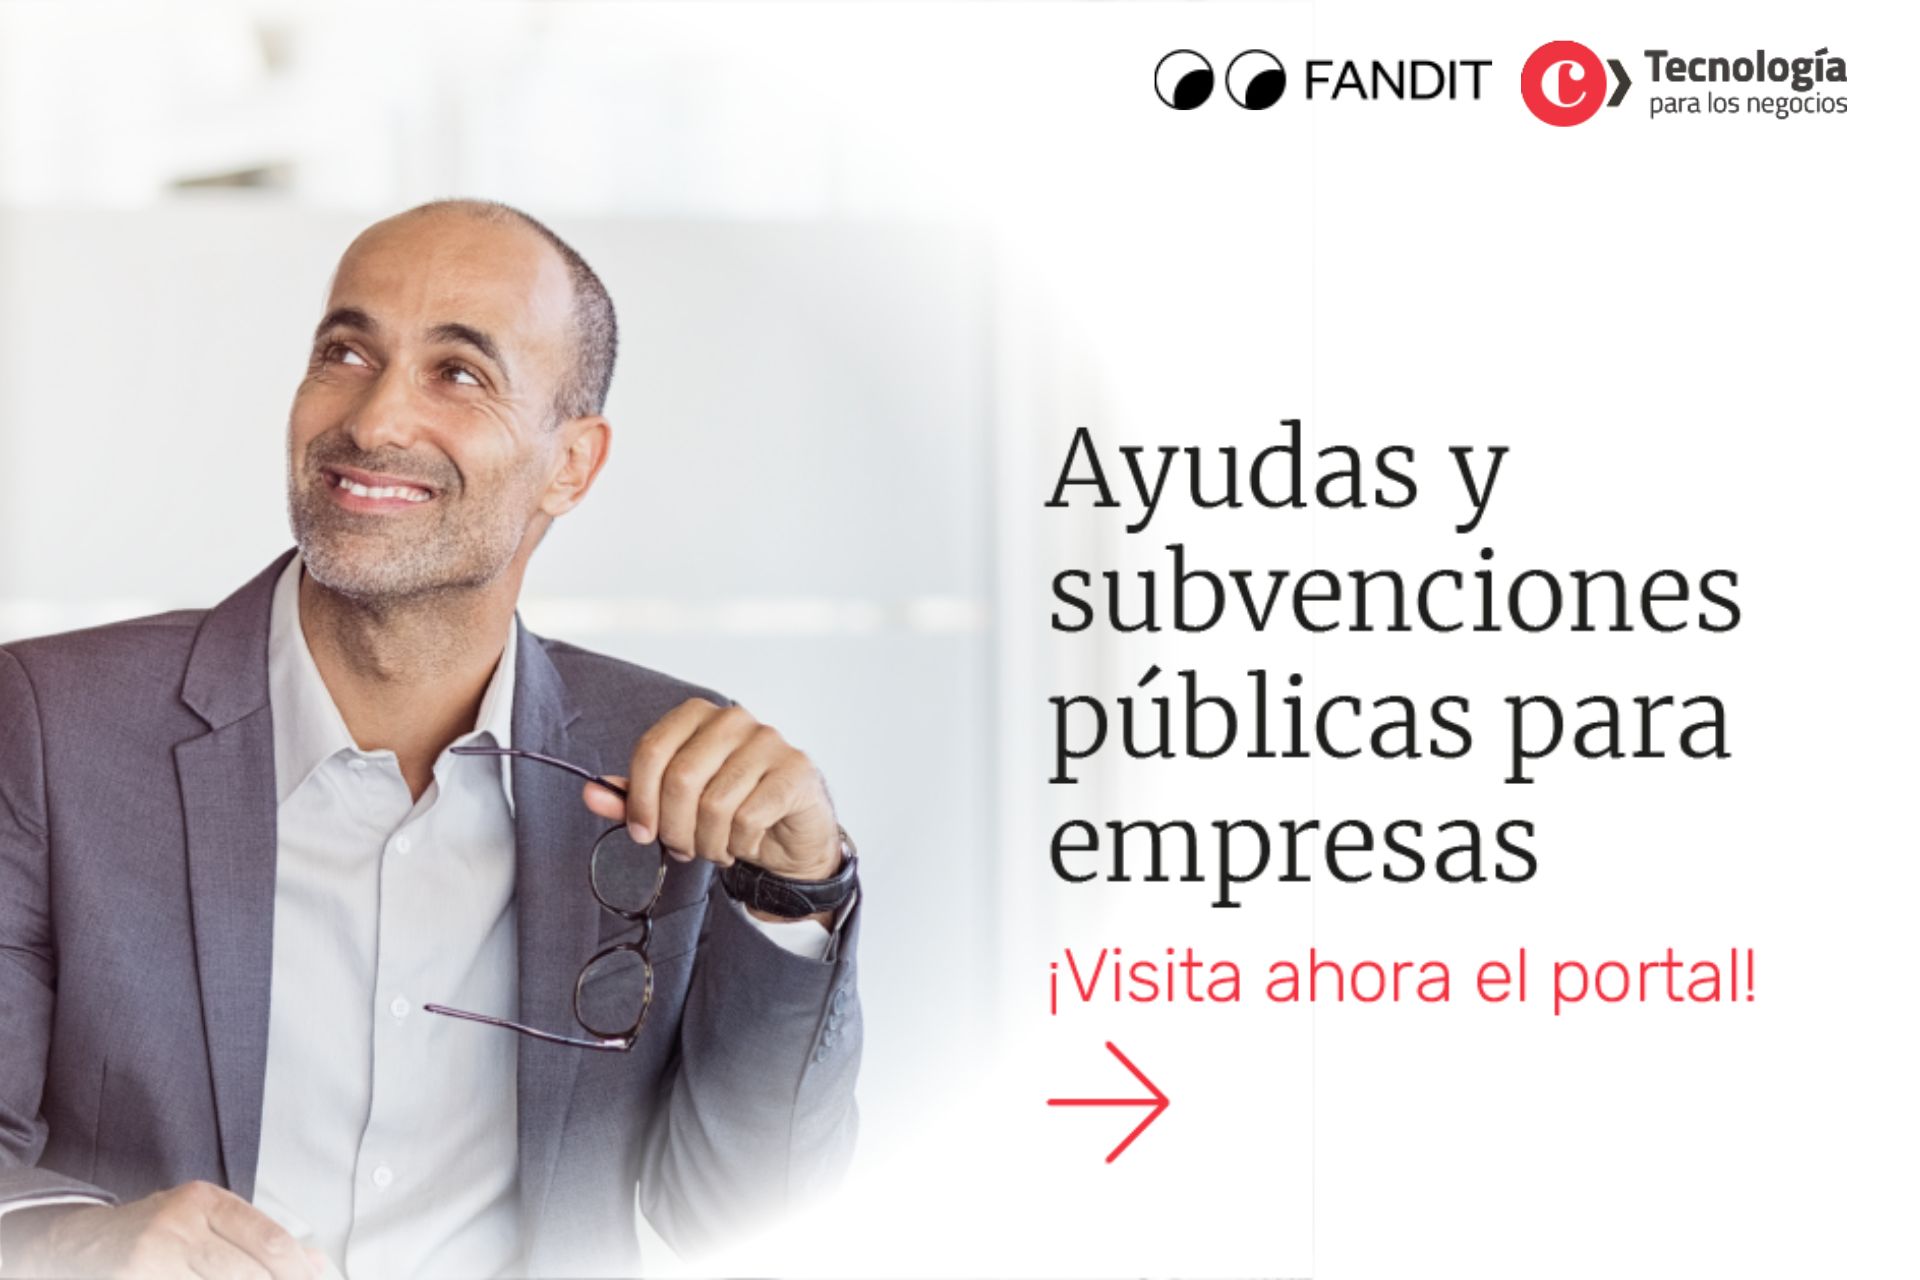 La Cámara de Comercio de Madrid y FANDIT facilitan el acceso a las subvenciones a pymes y autónomos.